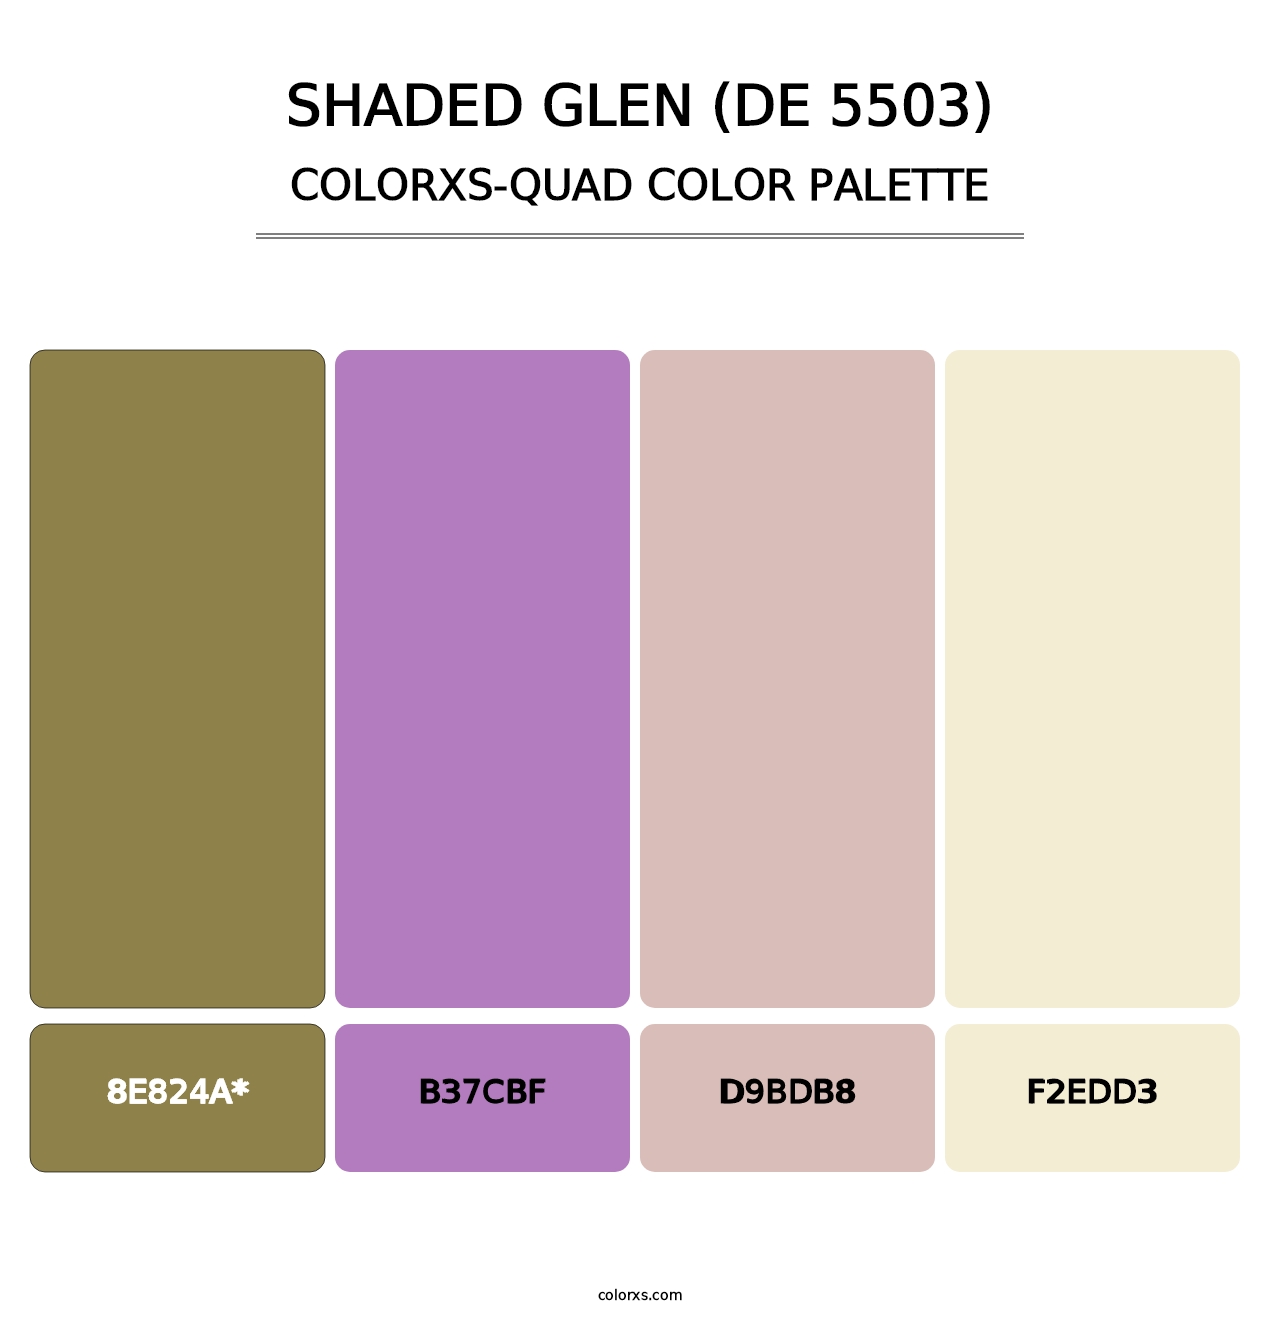 Shaded Glen (DE 5503) - Colorxs Quad Palette